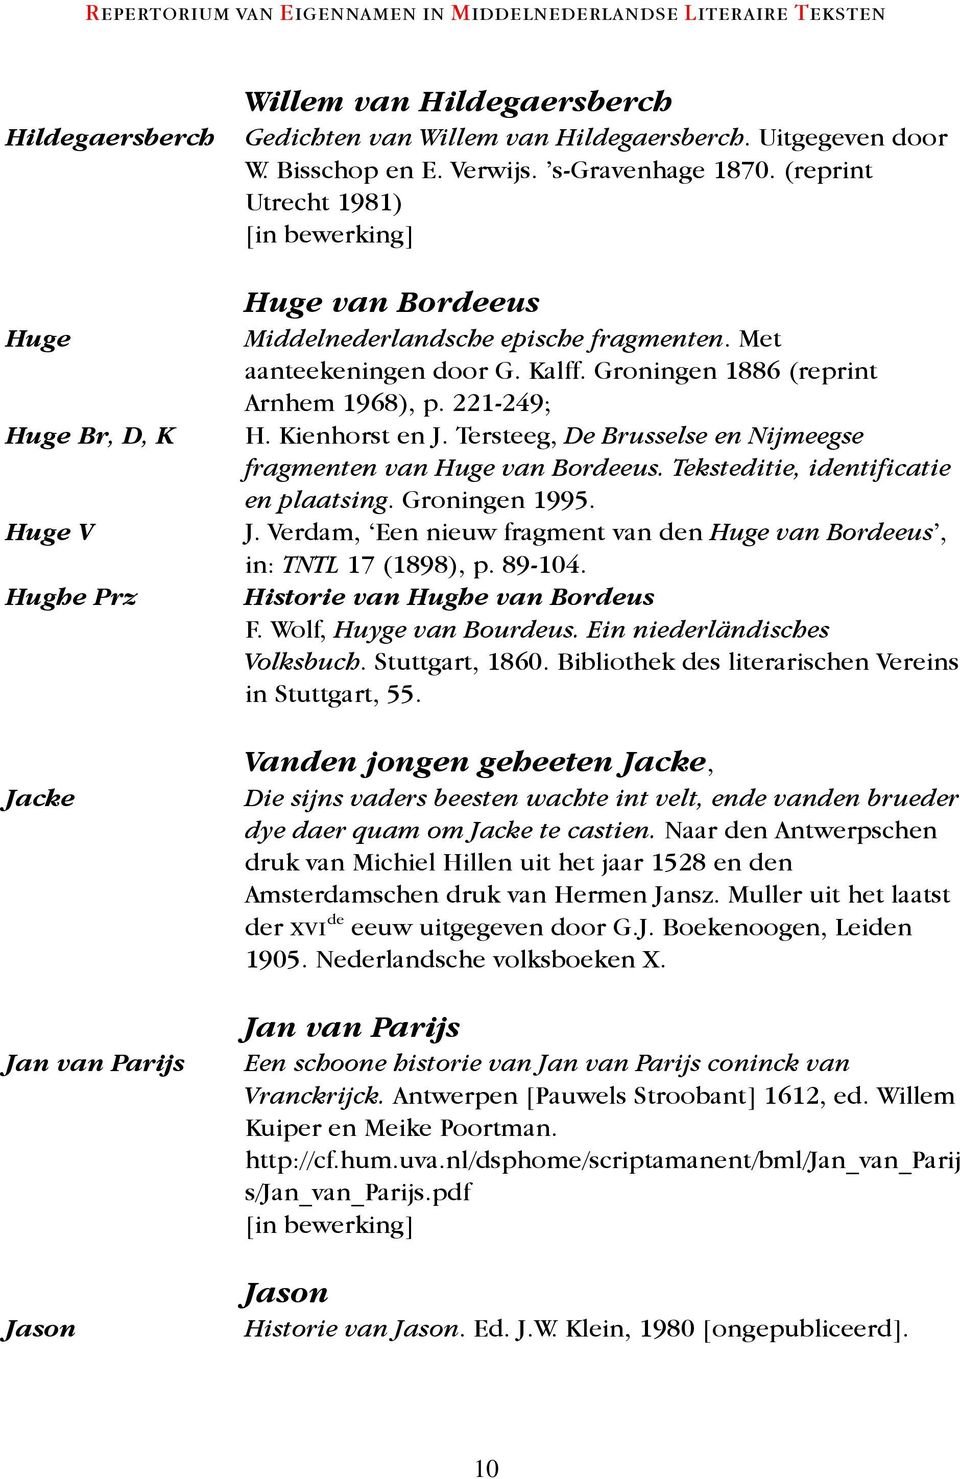 Kienhorst en J. Tersteeg, De Brusselse en Nijmeegse fragmenten van Huge van Bordeeus. Teksteditie, identificatie en plaatsing. Groningen 1995. J. Verdam, Een nieuw fragment van den Huge van Bordeeus, in: TNTL 17 (1898), p.